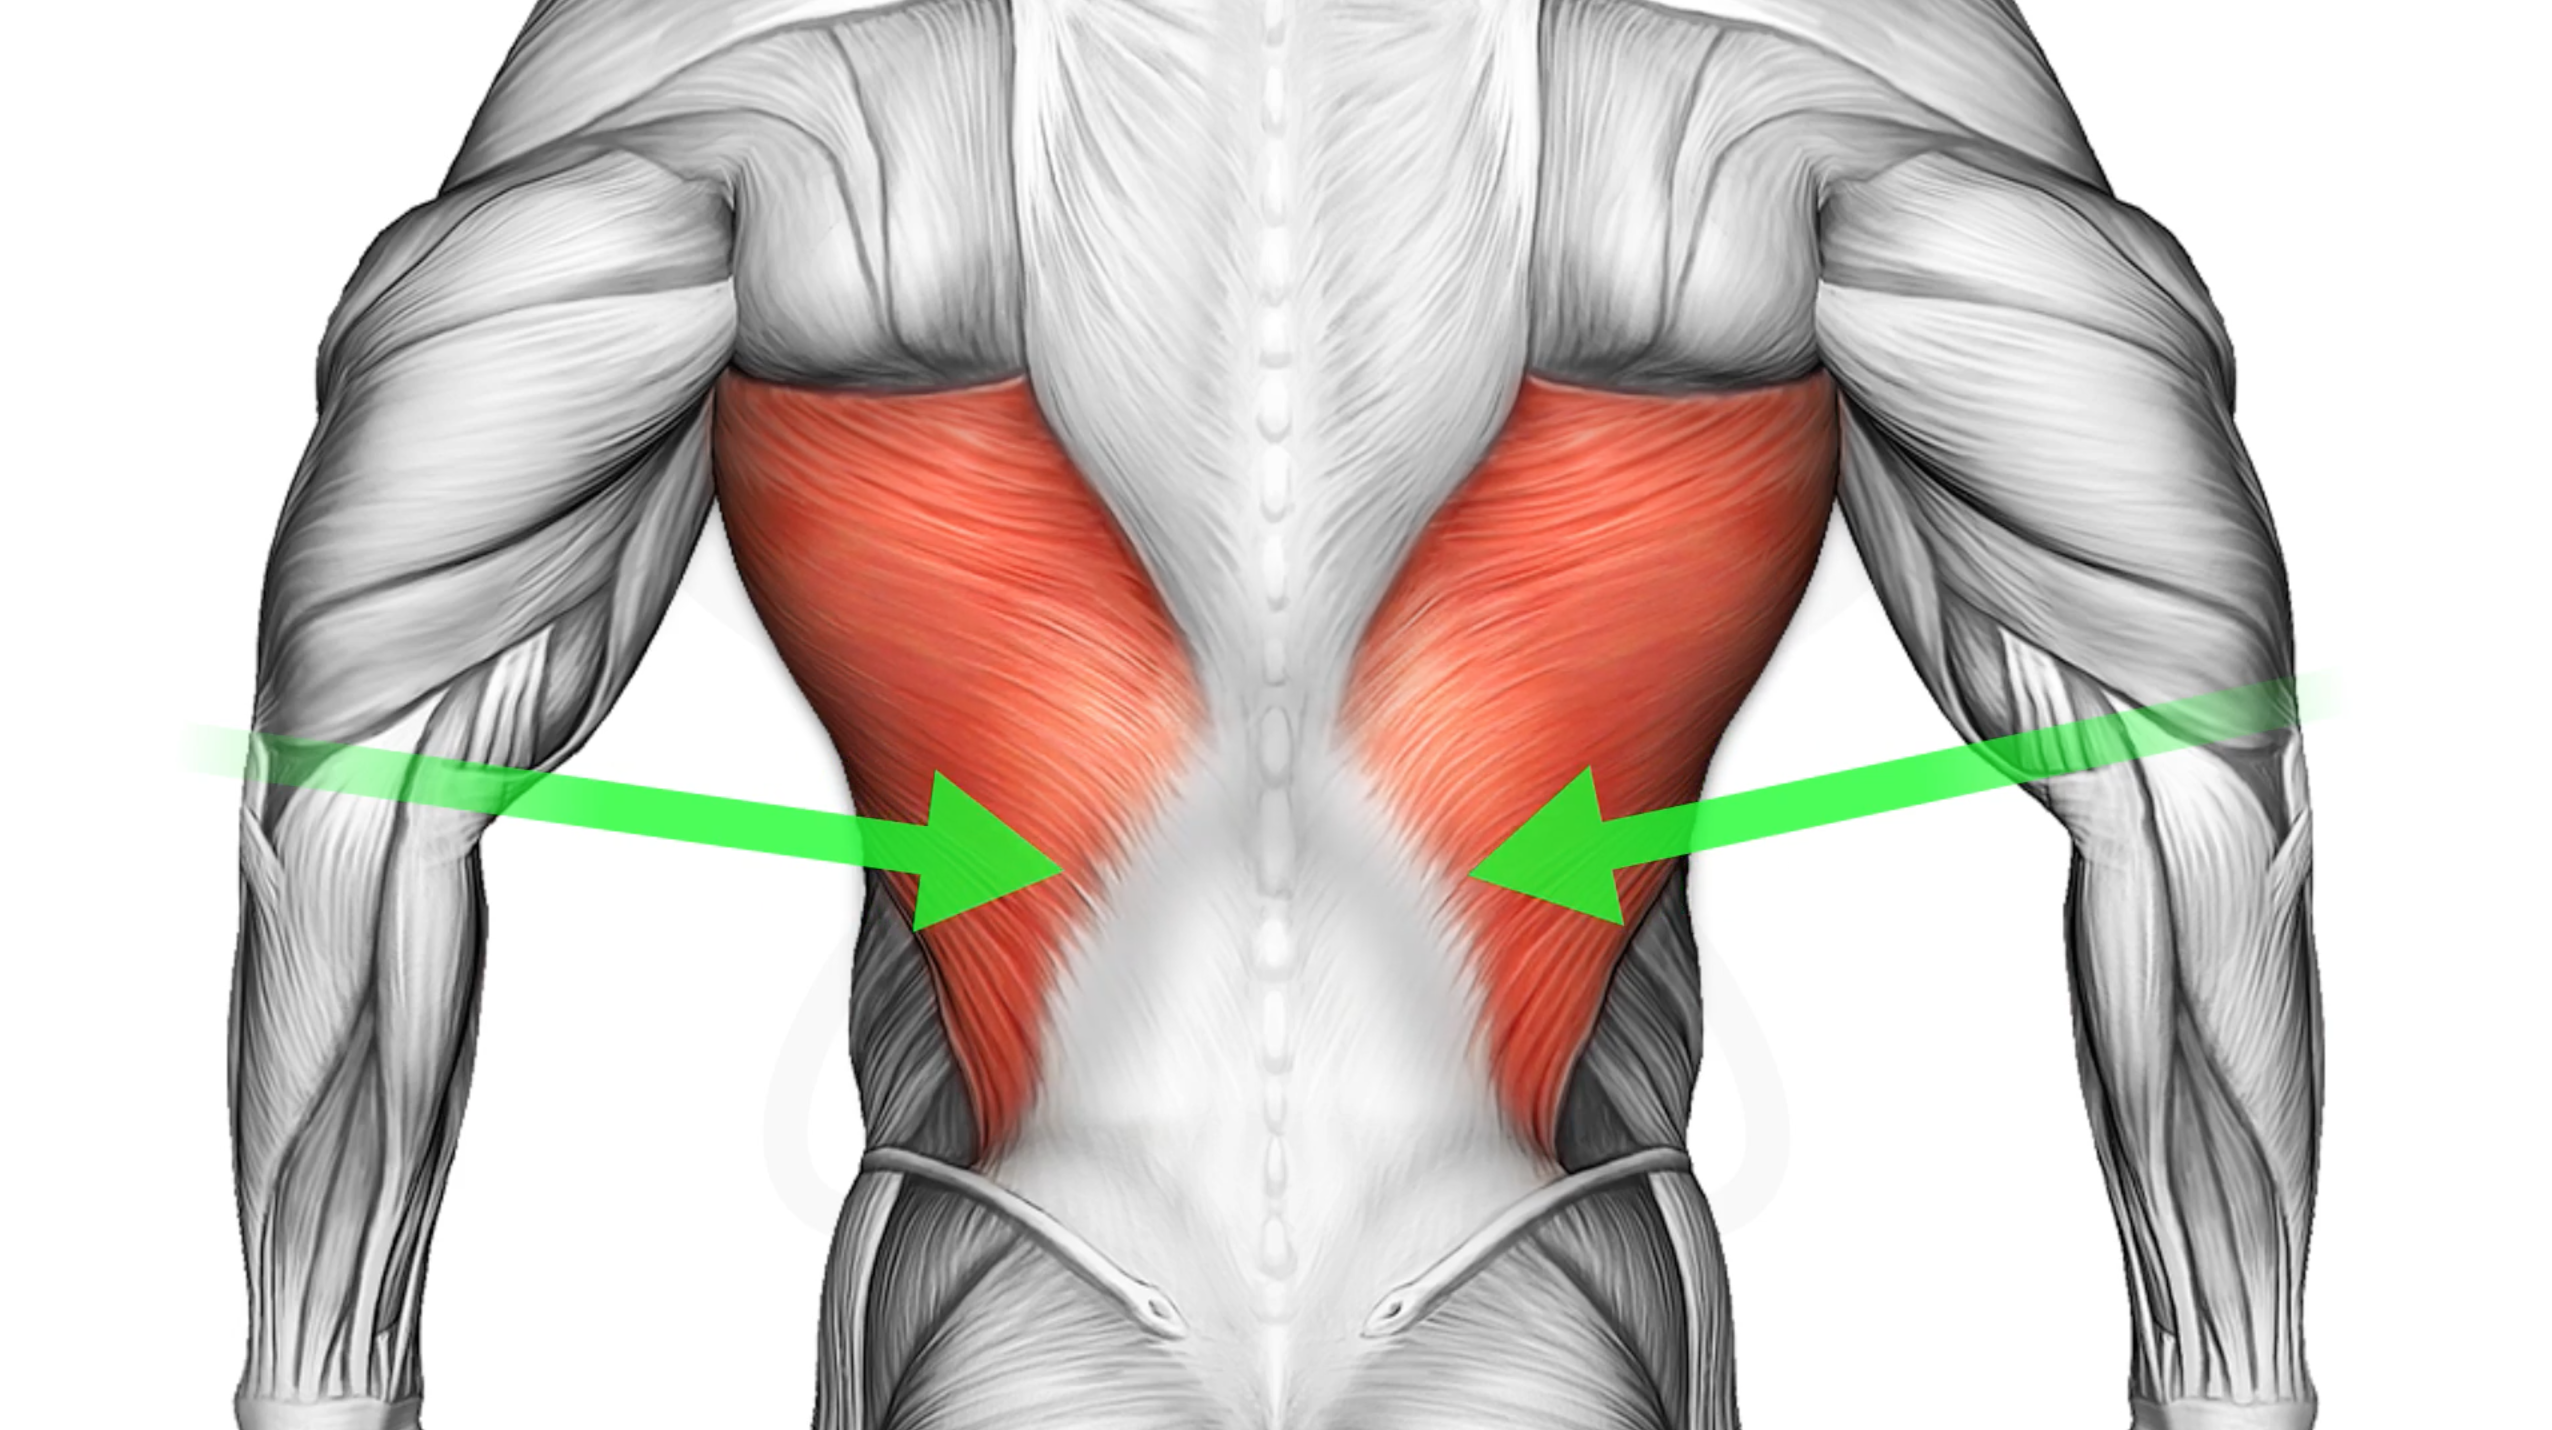 Широчайшая мышца спины спереди. Апоневроз широчайшей мышцы спины. Крылья мышцы спины спереди. Широчайшая мышца спины вид сбоку. Нижняя часть поясницы